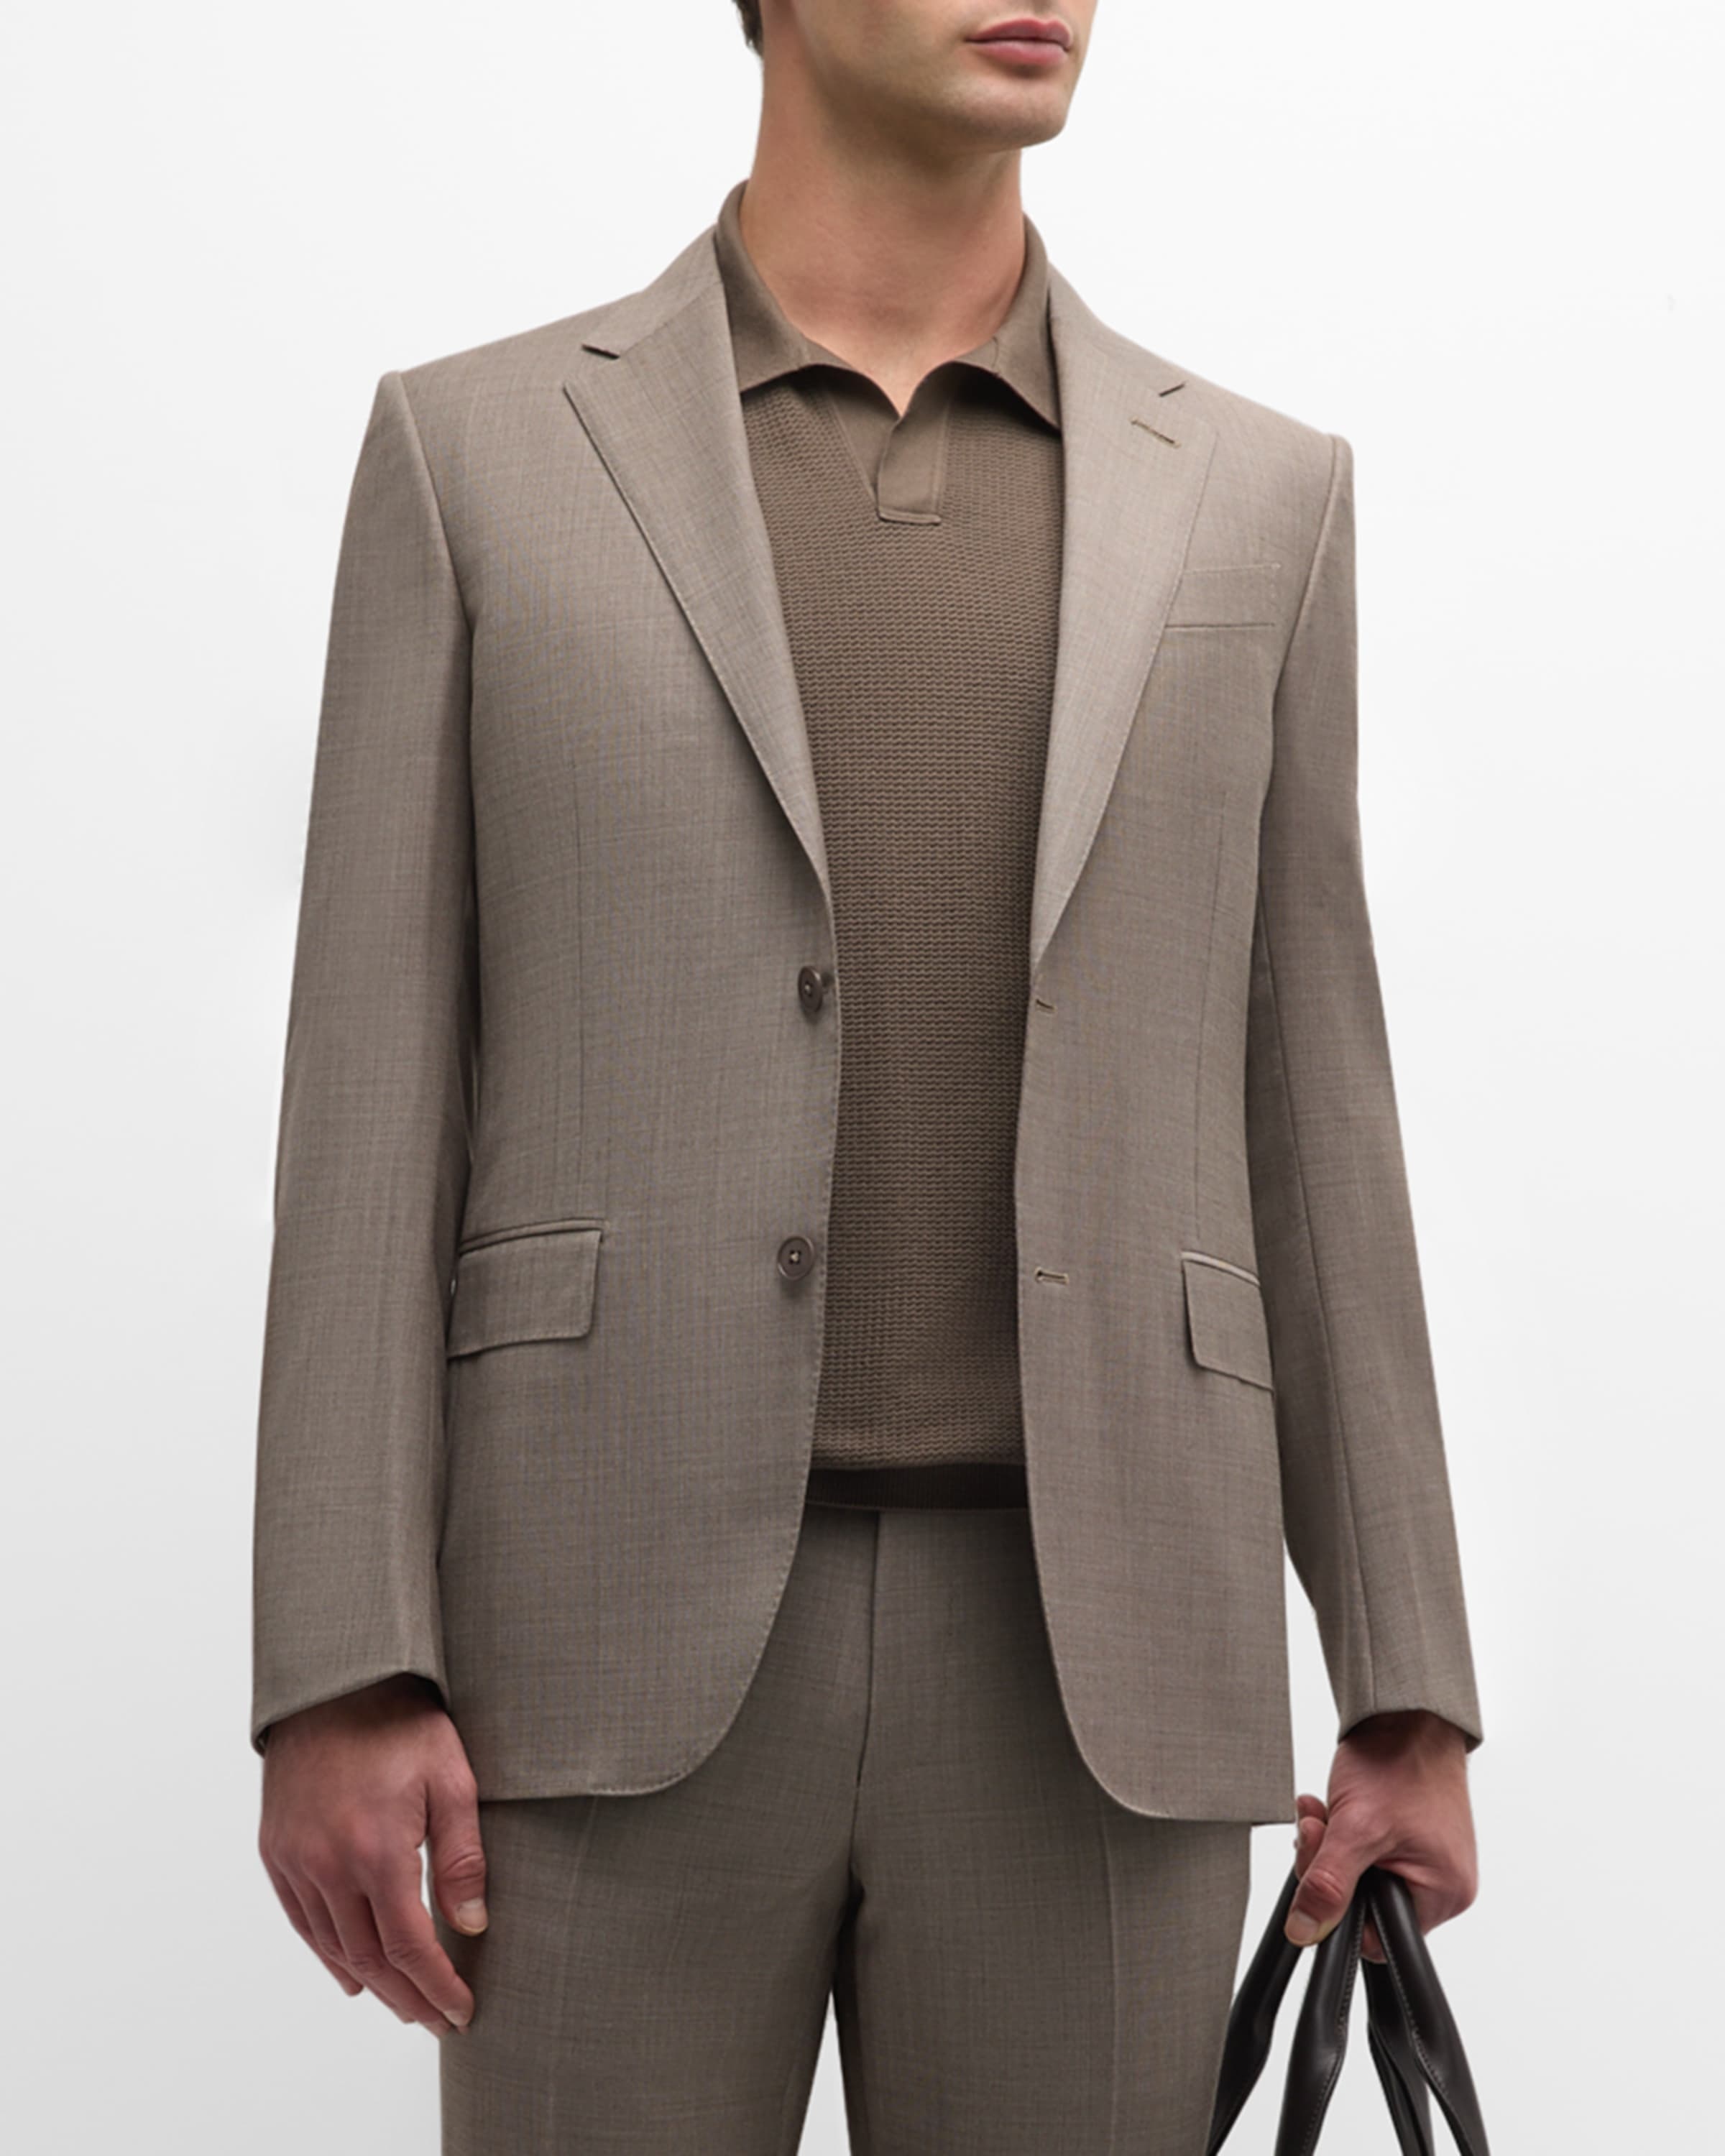 Men's Wool Sharkskin Suit - 2